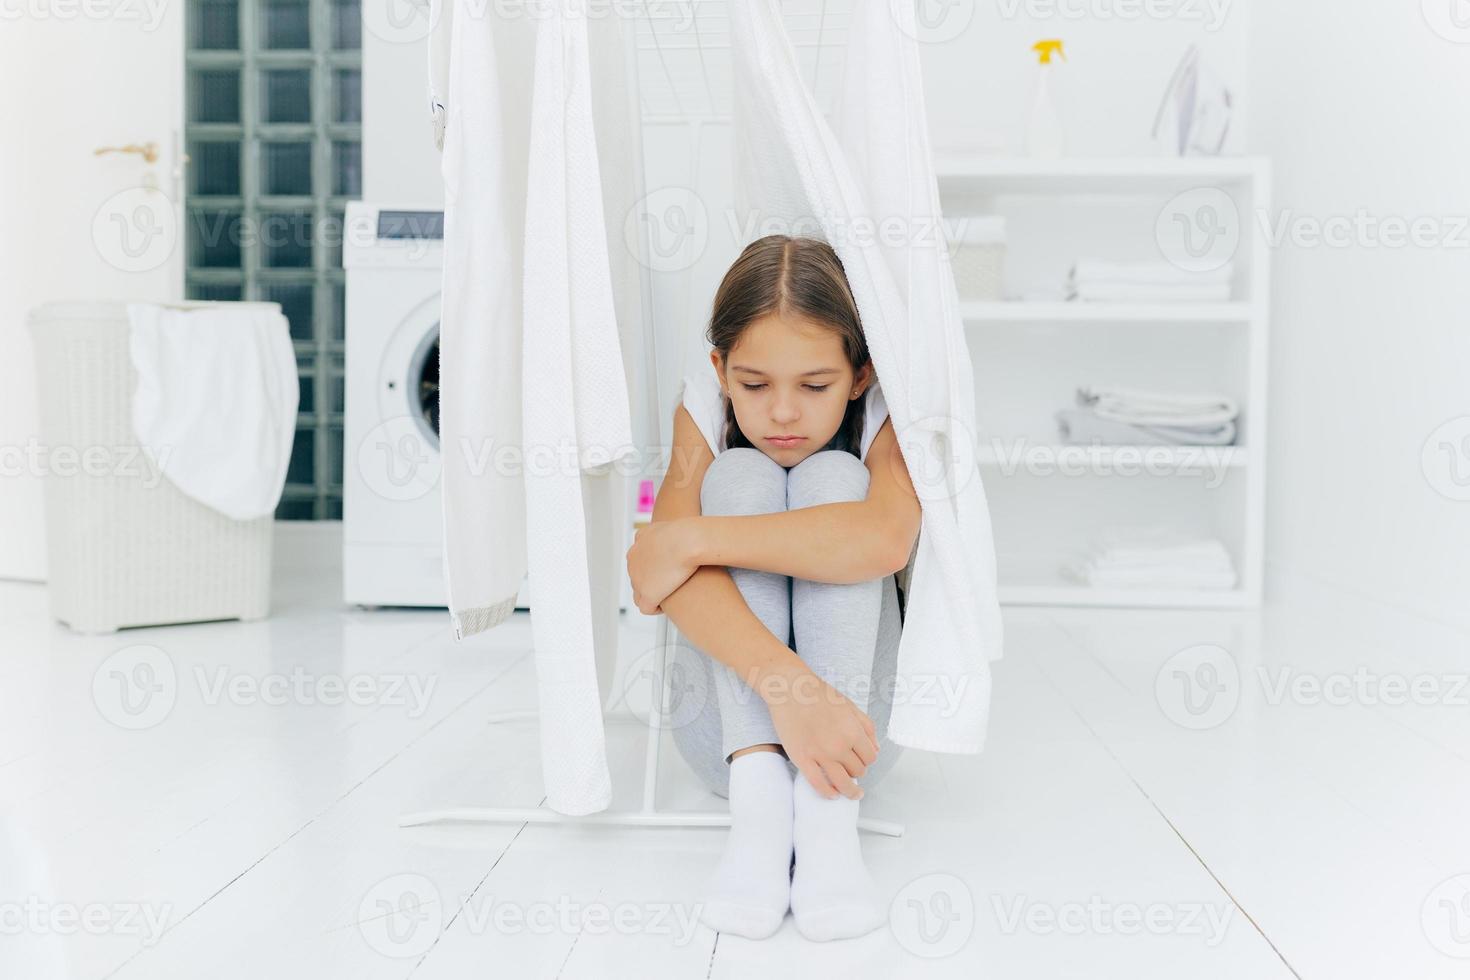 pequena adorável menina senta-se no chão, sendo punida pelos pais, posa perto da secadora de roupas, focada com expressão triste, máquina de lavar, cesta com lavanderia e console, pensa em algo foto